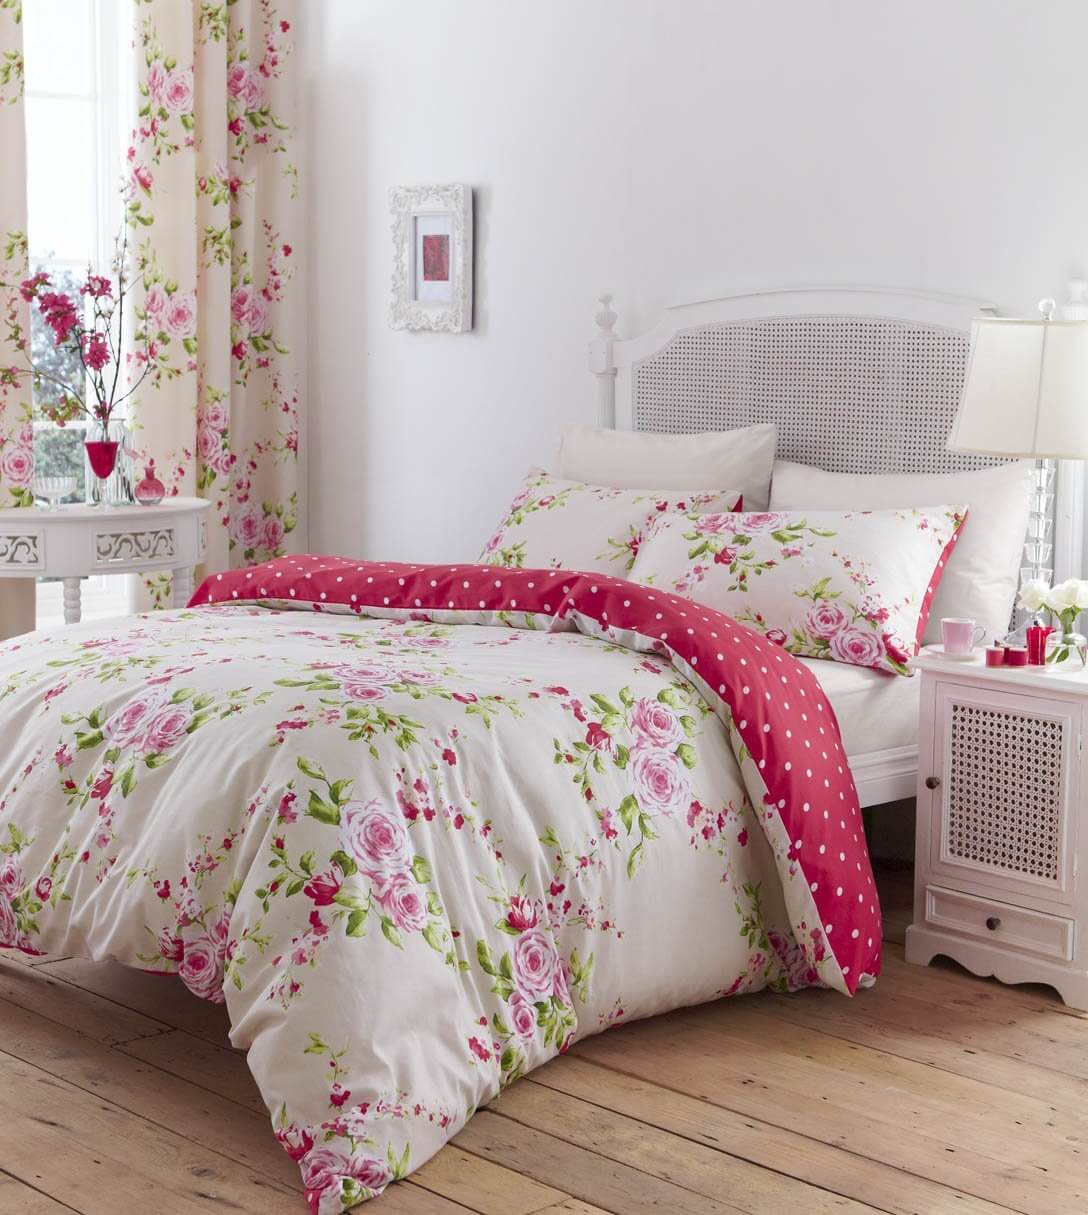 chambre shabby chic, lit blanc paré de linge de lit fleuri et rideaux a motifs floraux, parquet en bois, mur couleur blanche